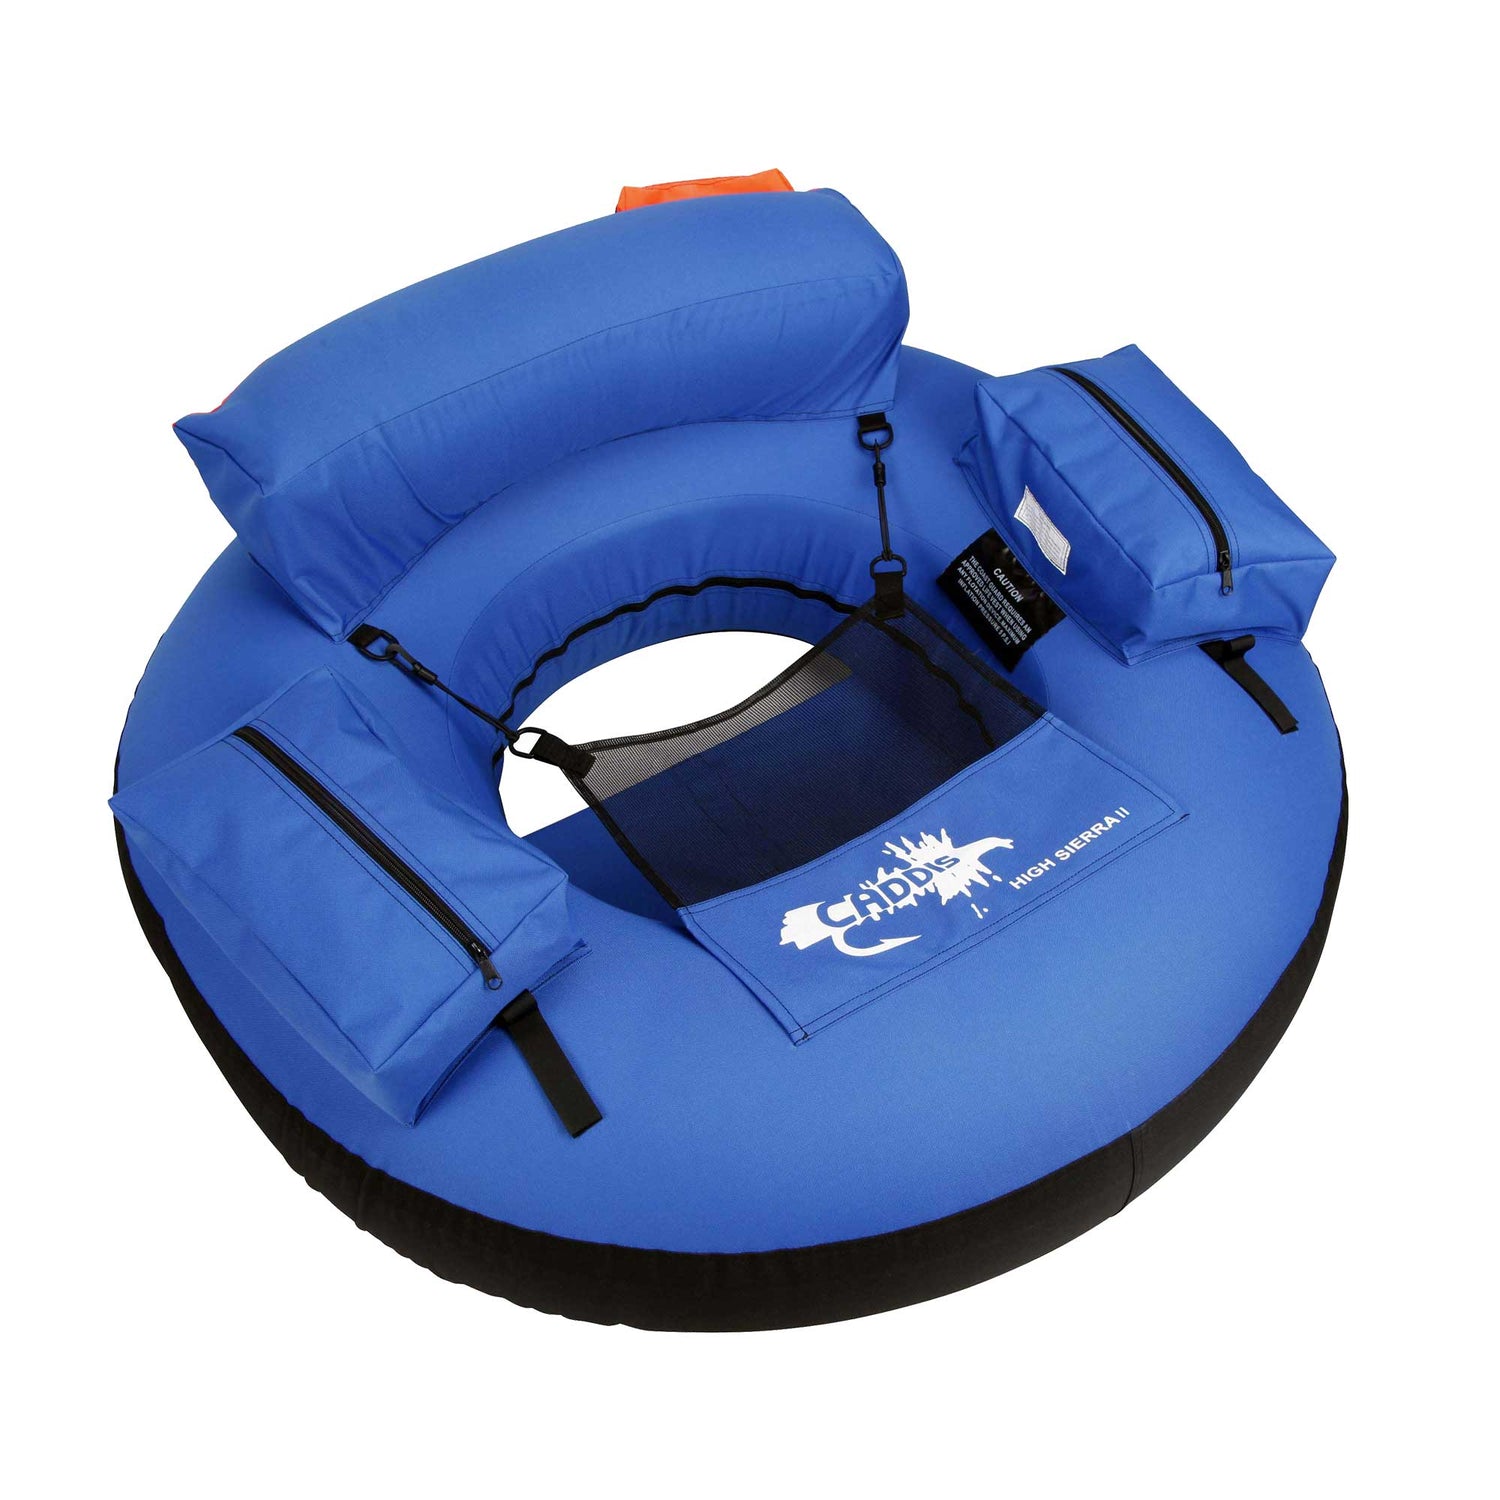 Pro 3000 Float Tube – Caddis Sports